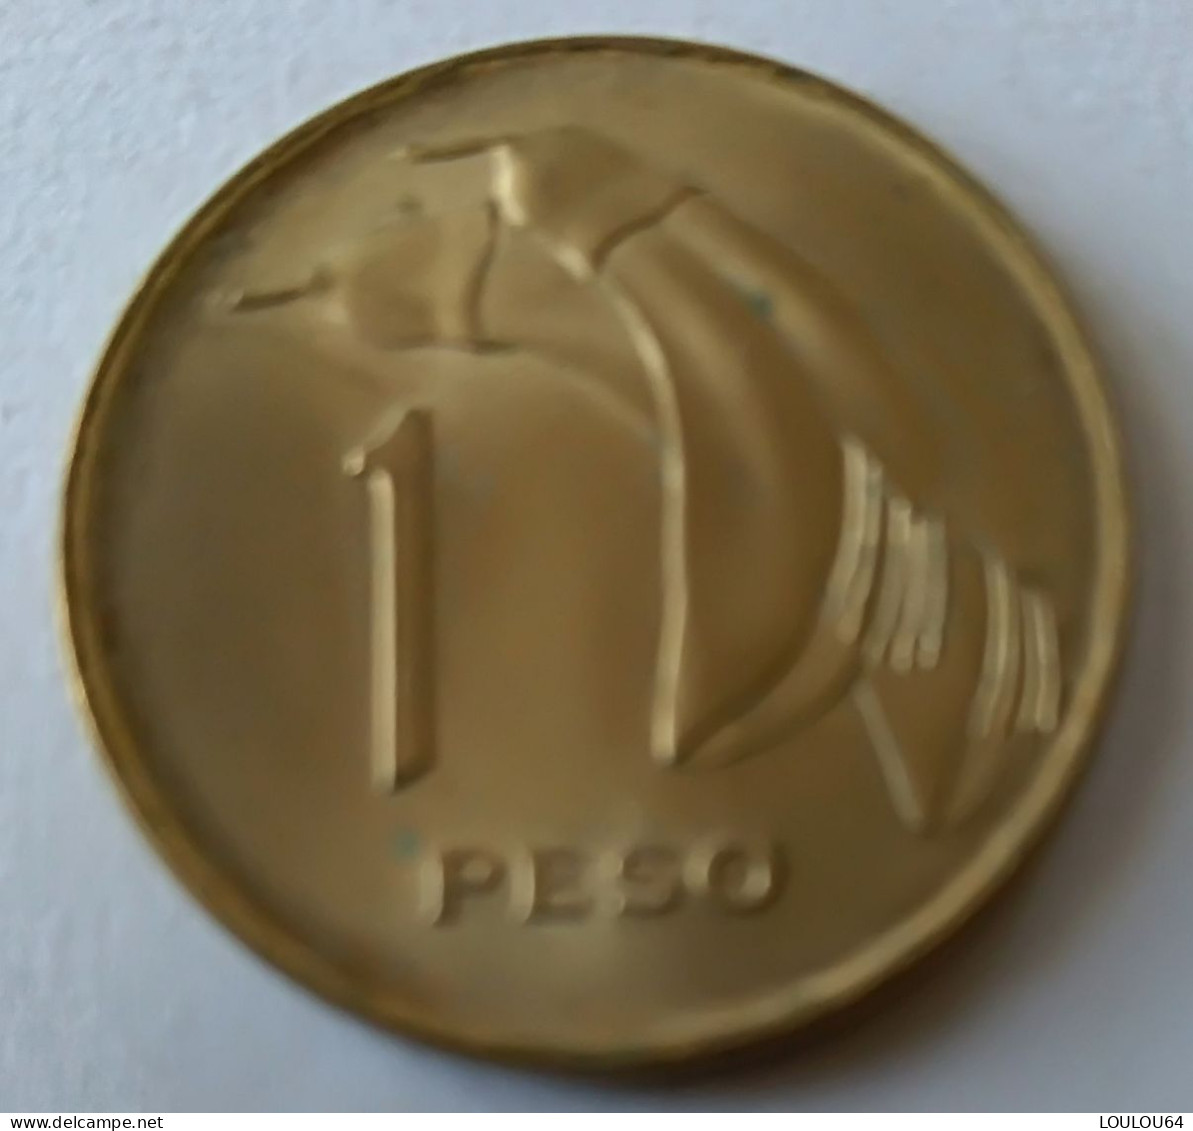 URUGUAY - 1 Peso 1969 - Cu-Alu - - Uruguay